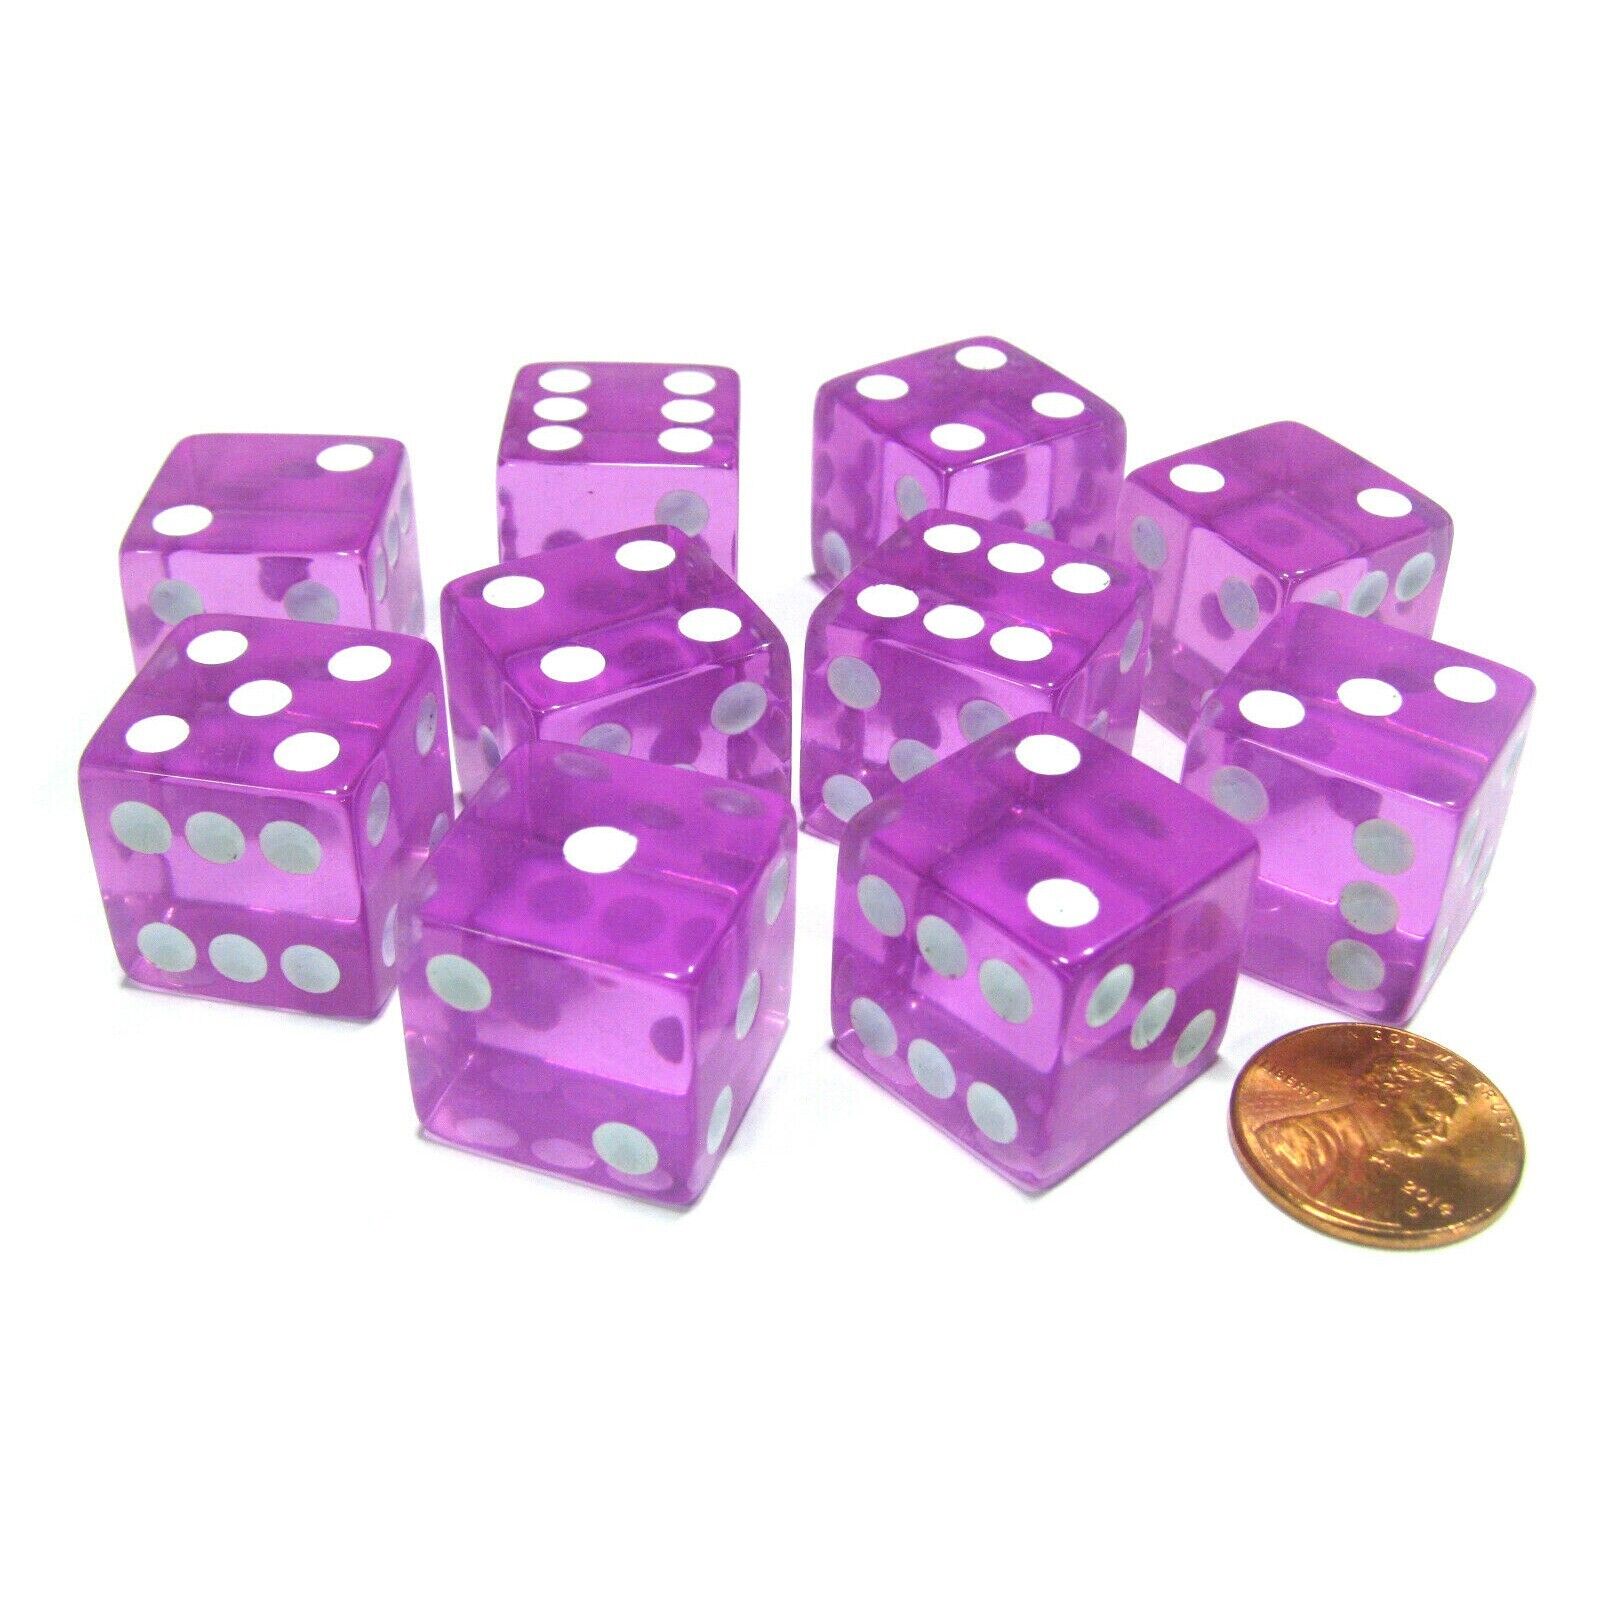 Casino Professional CRAPS 5 Big Purple Dice 19mm 3/4 Inch  Dice Games